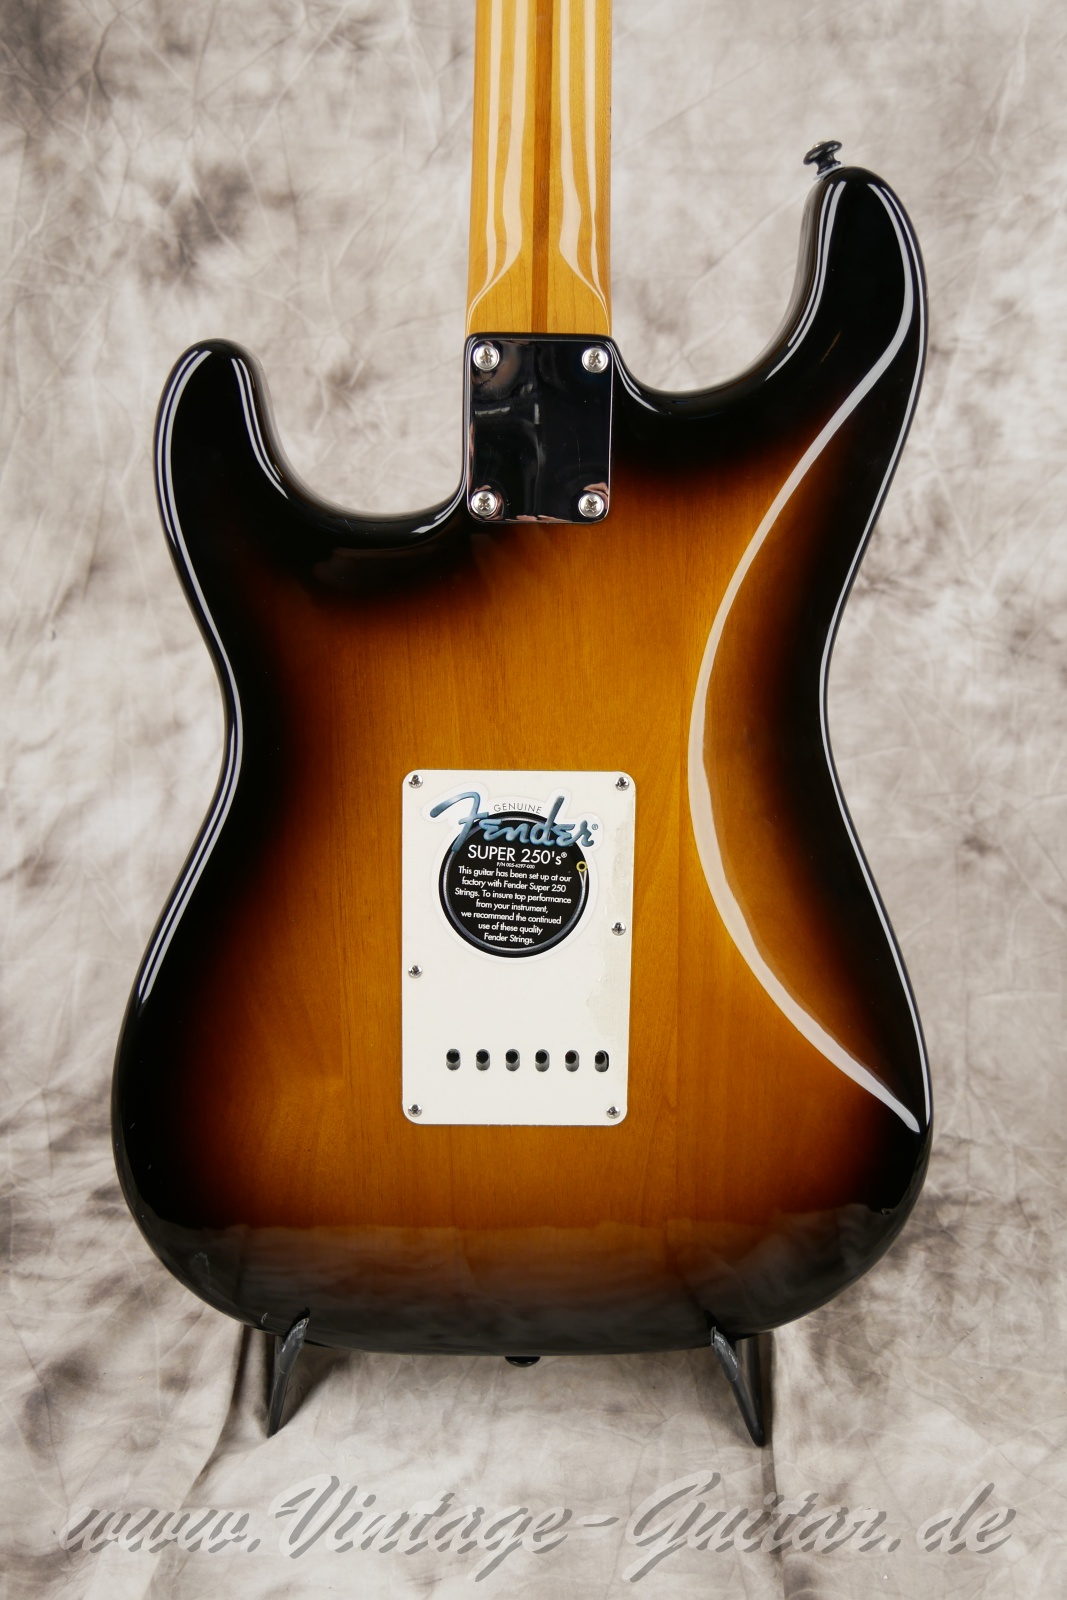 Fener-Stratocaster-Classic-player-series-50s-2007-sunburst-008.jpg